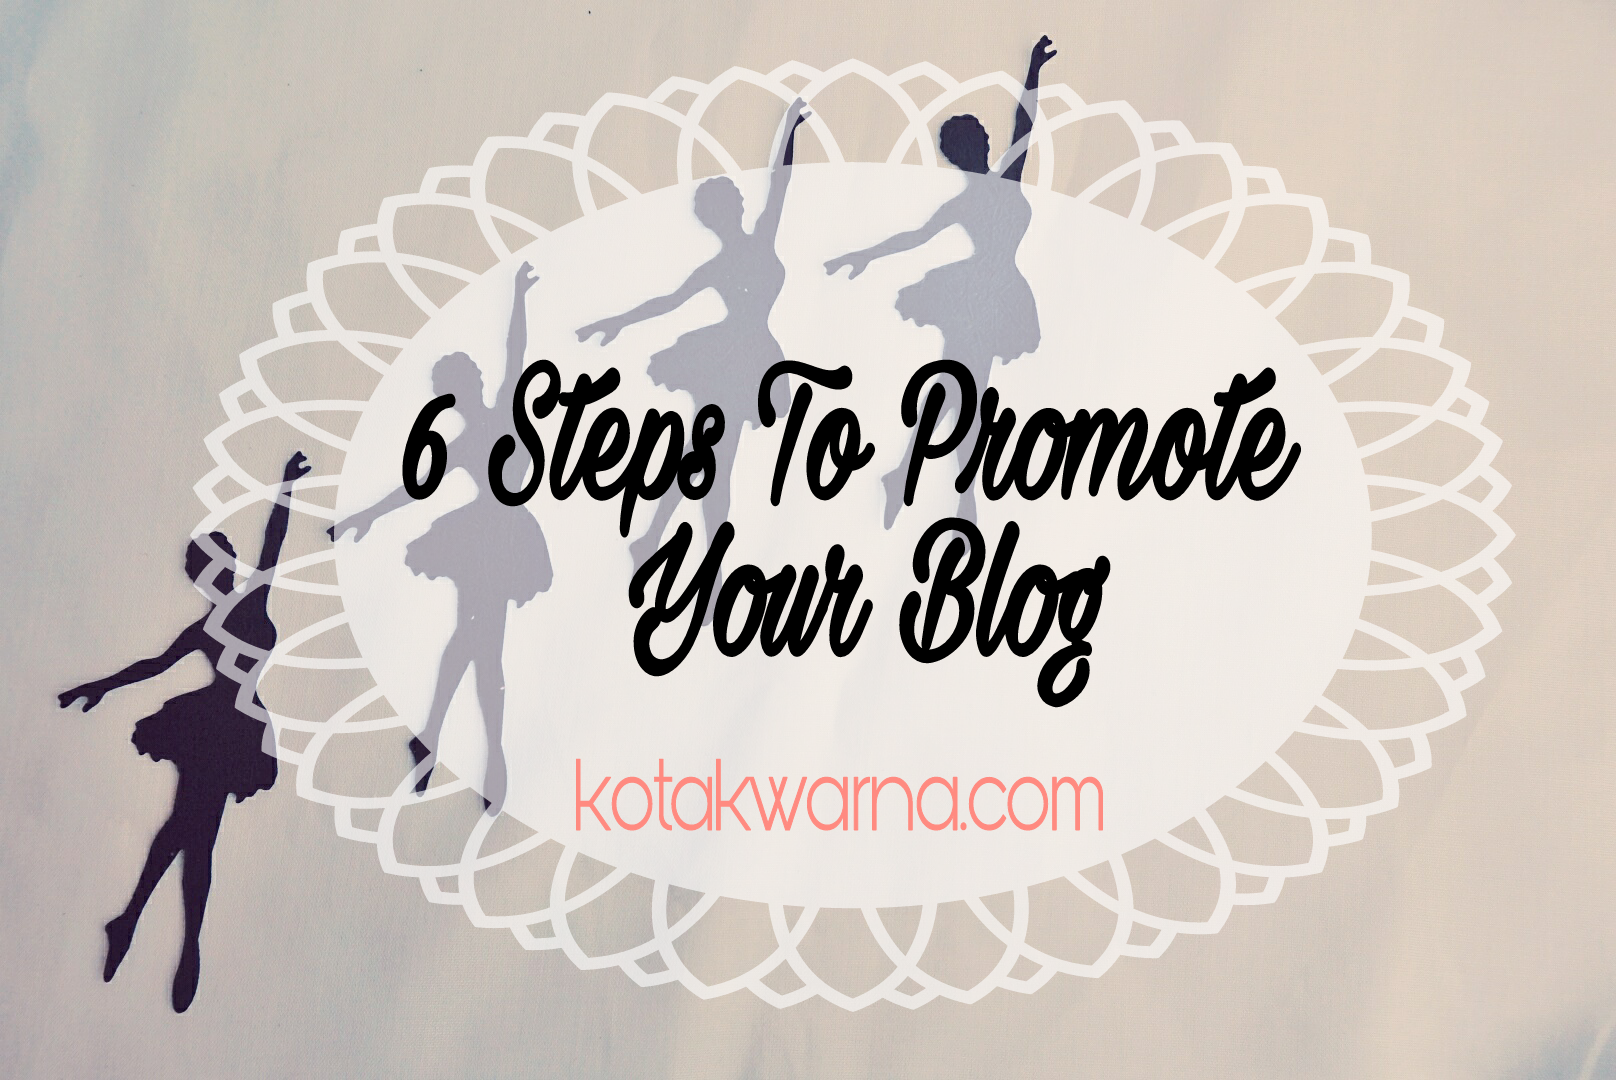 6 Steps Promote your blog